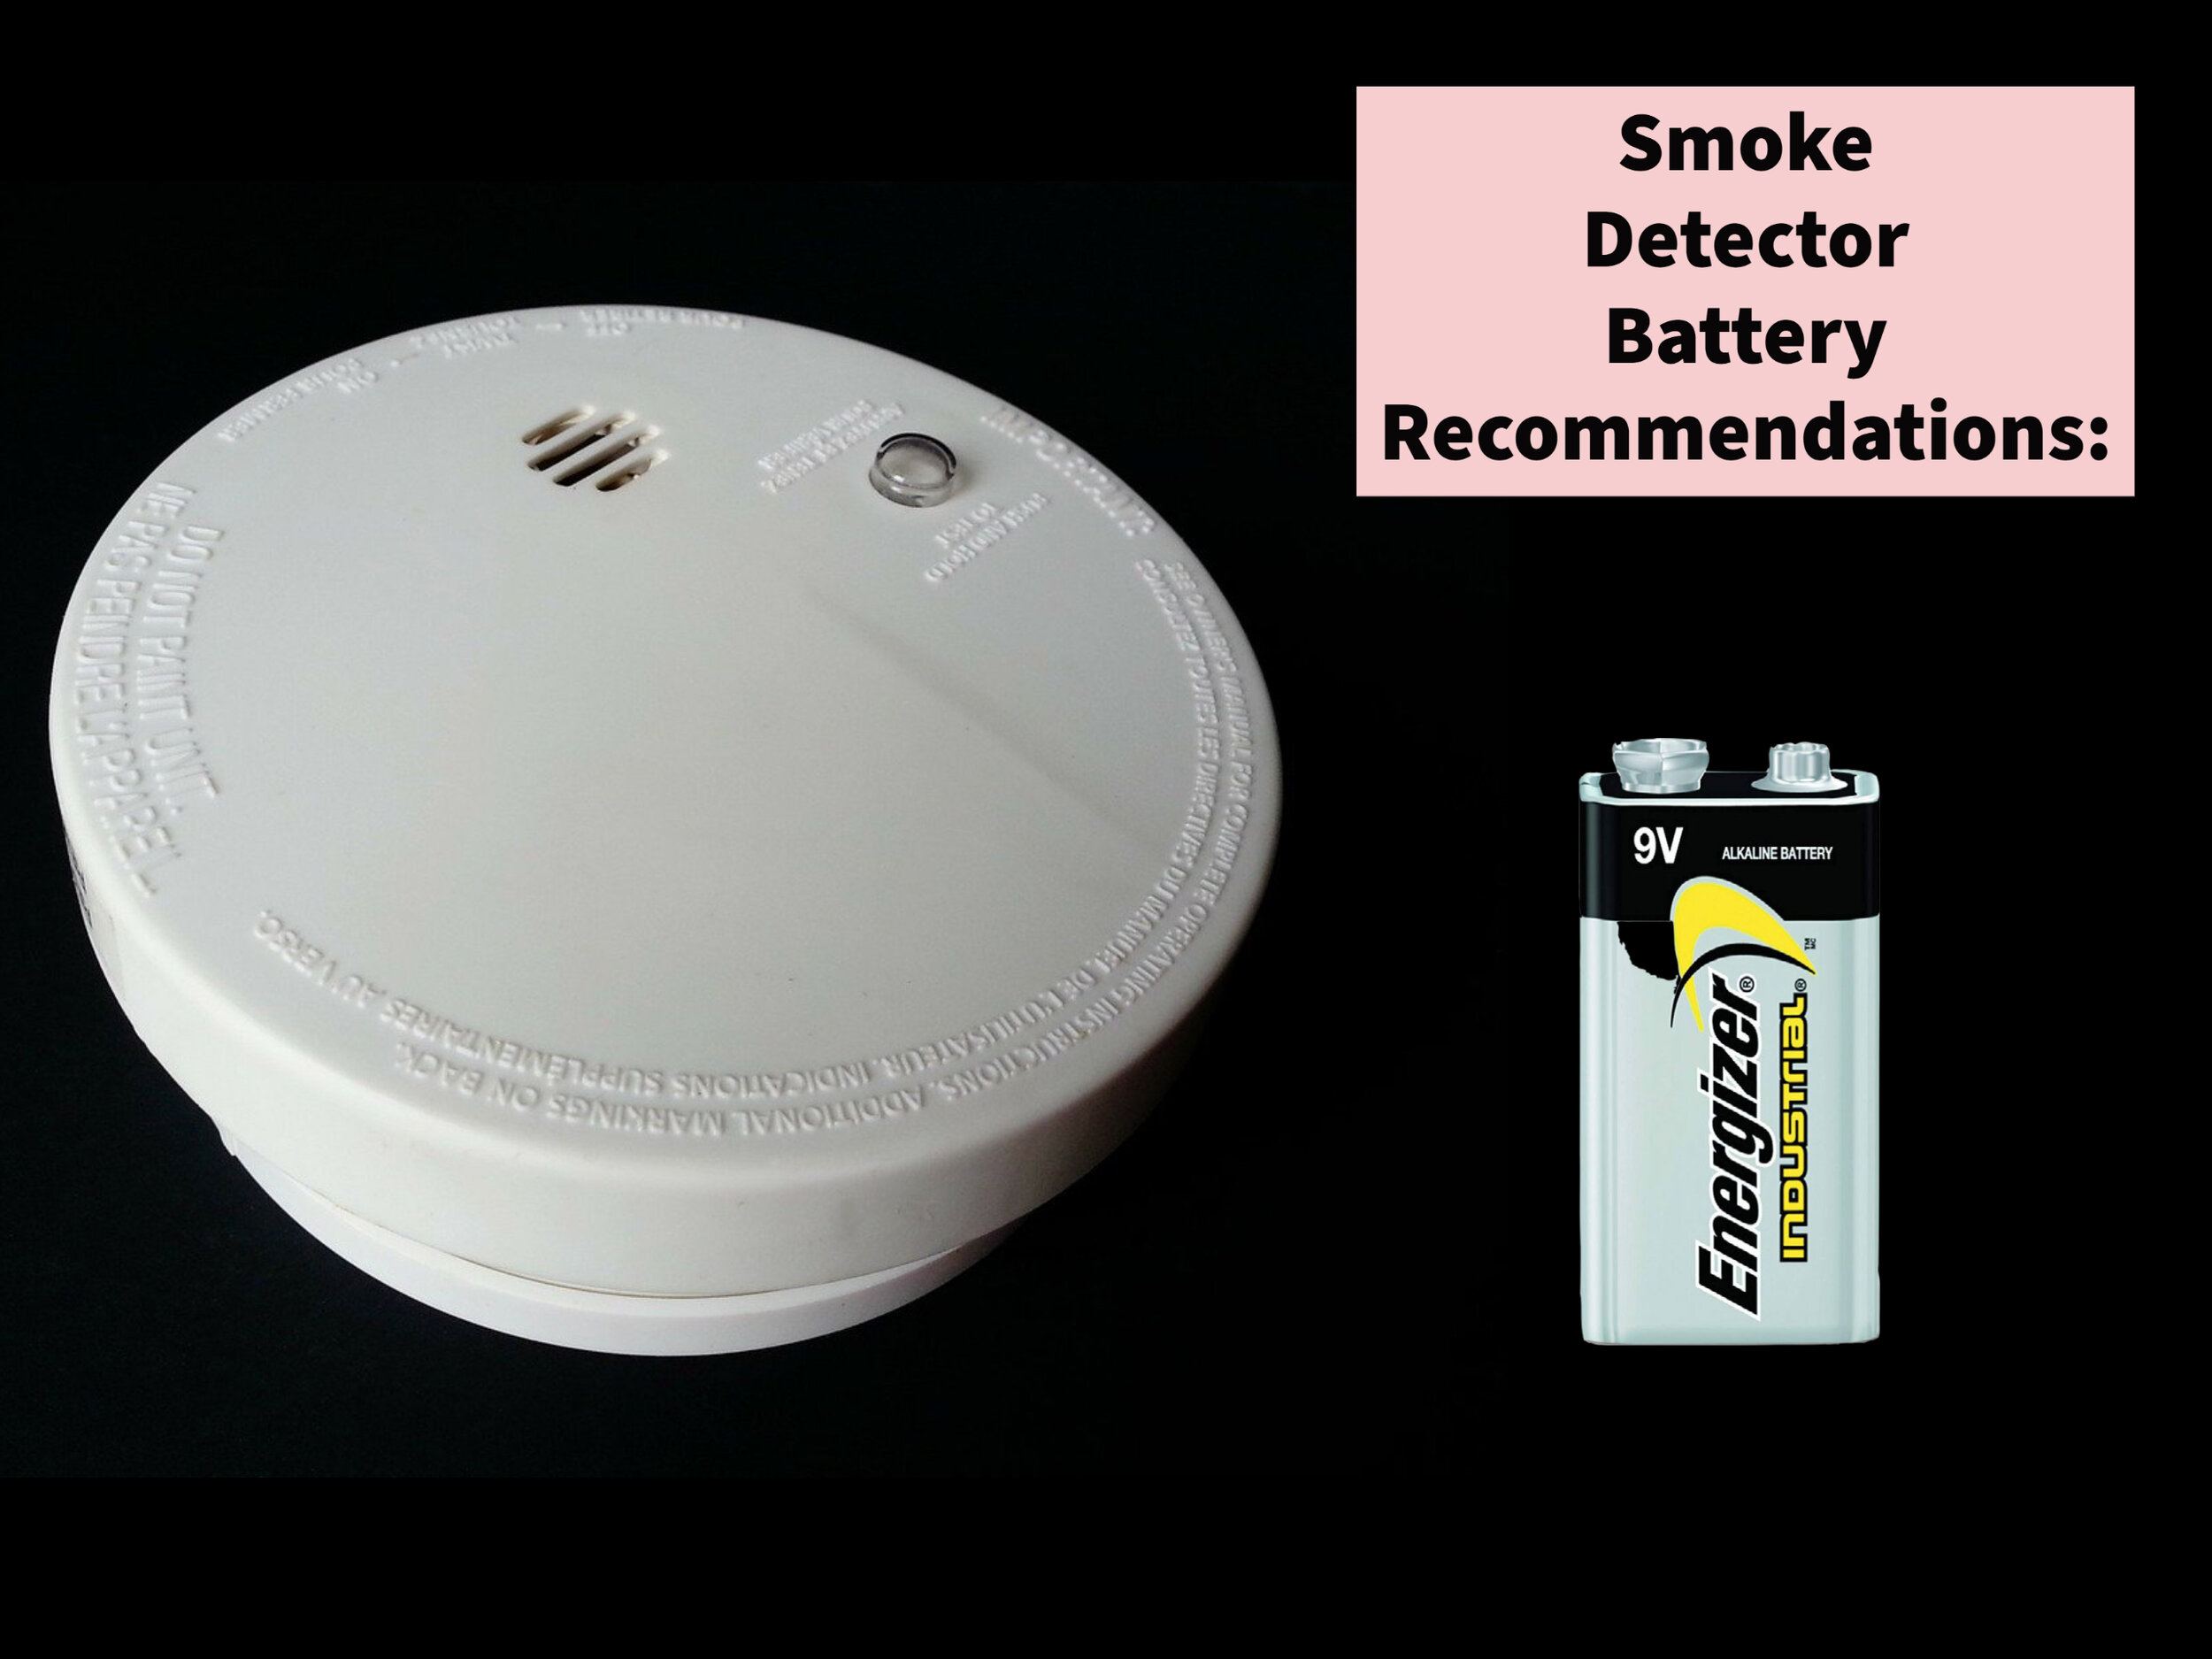 Jaká značka baterie je nejlepší pro detektory kouře?